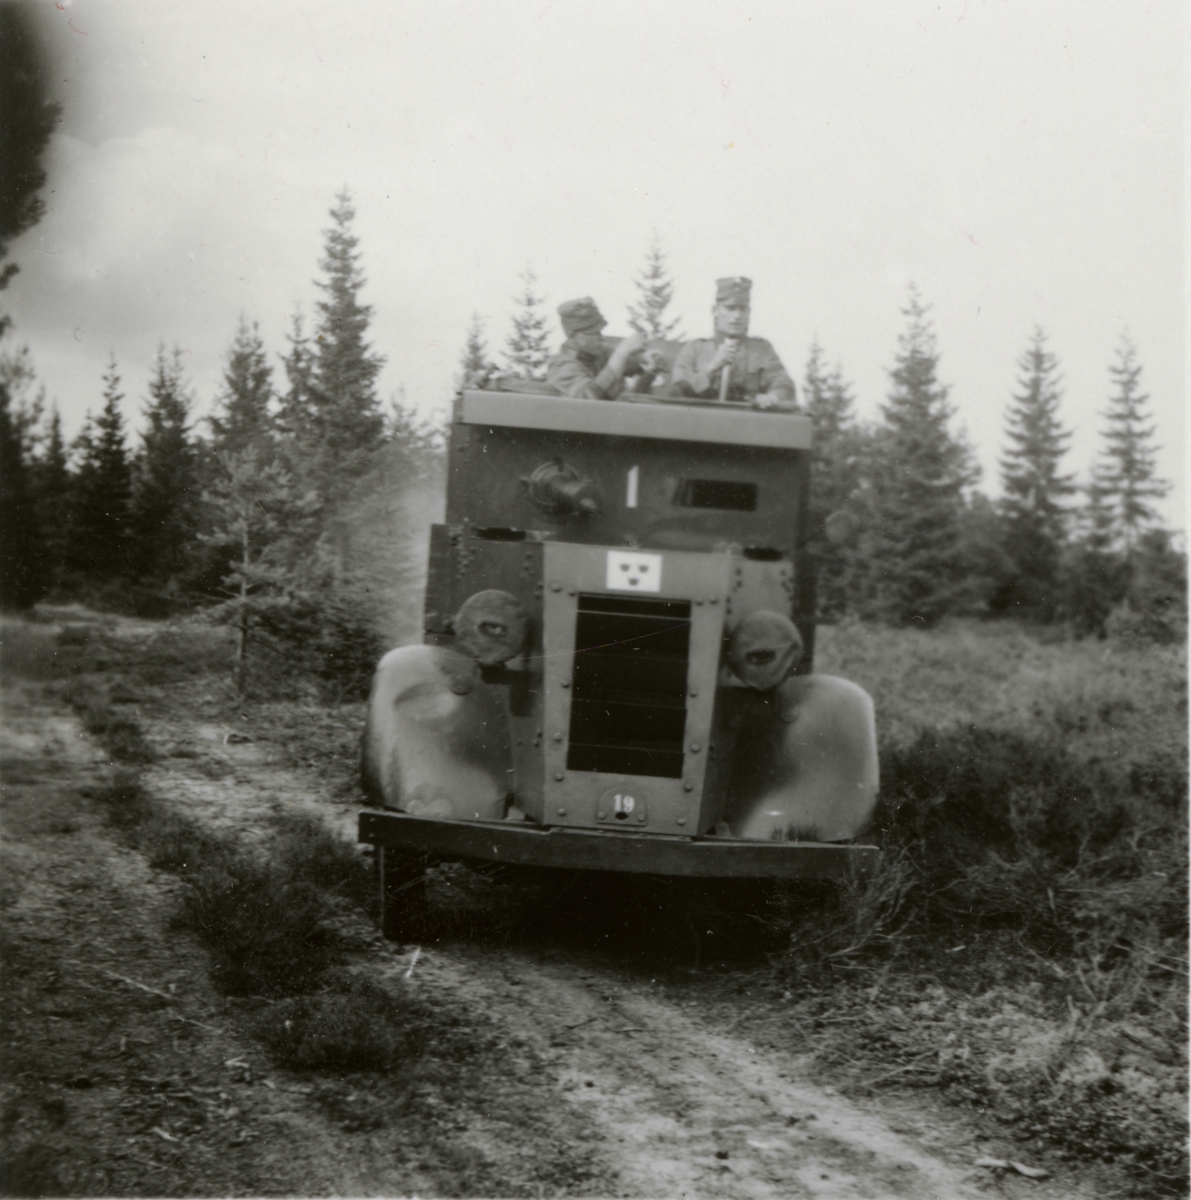 Text i fotoalbum: "Augustimanövern 1938. Pansarbilar i verksamhet".